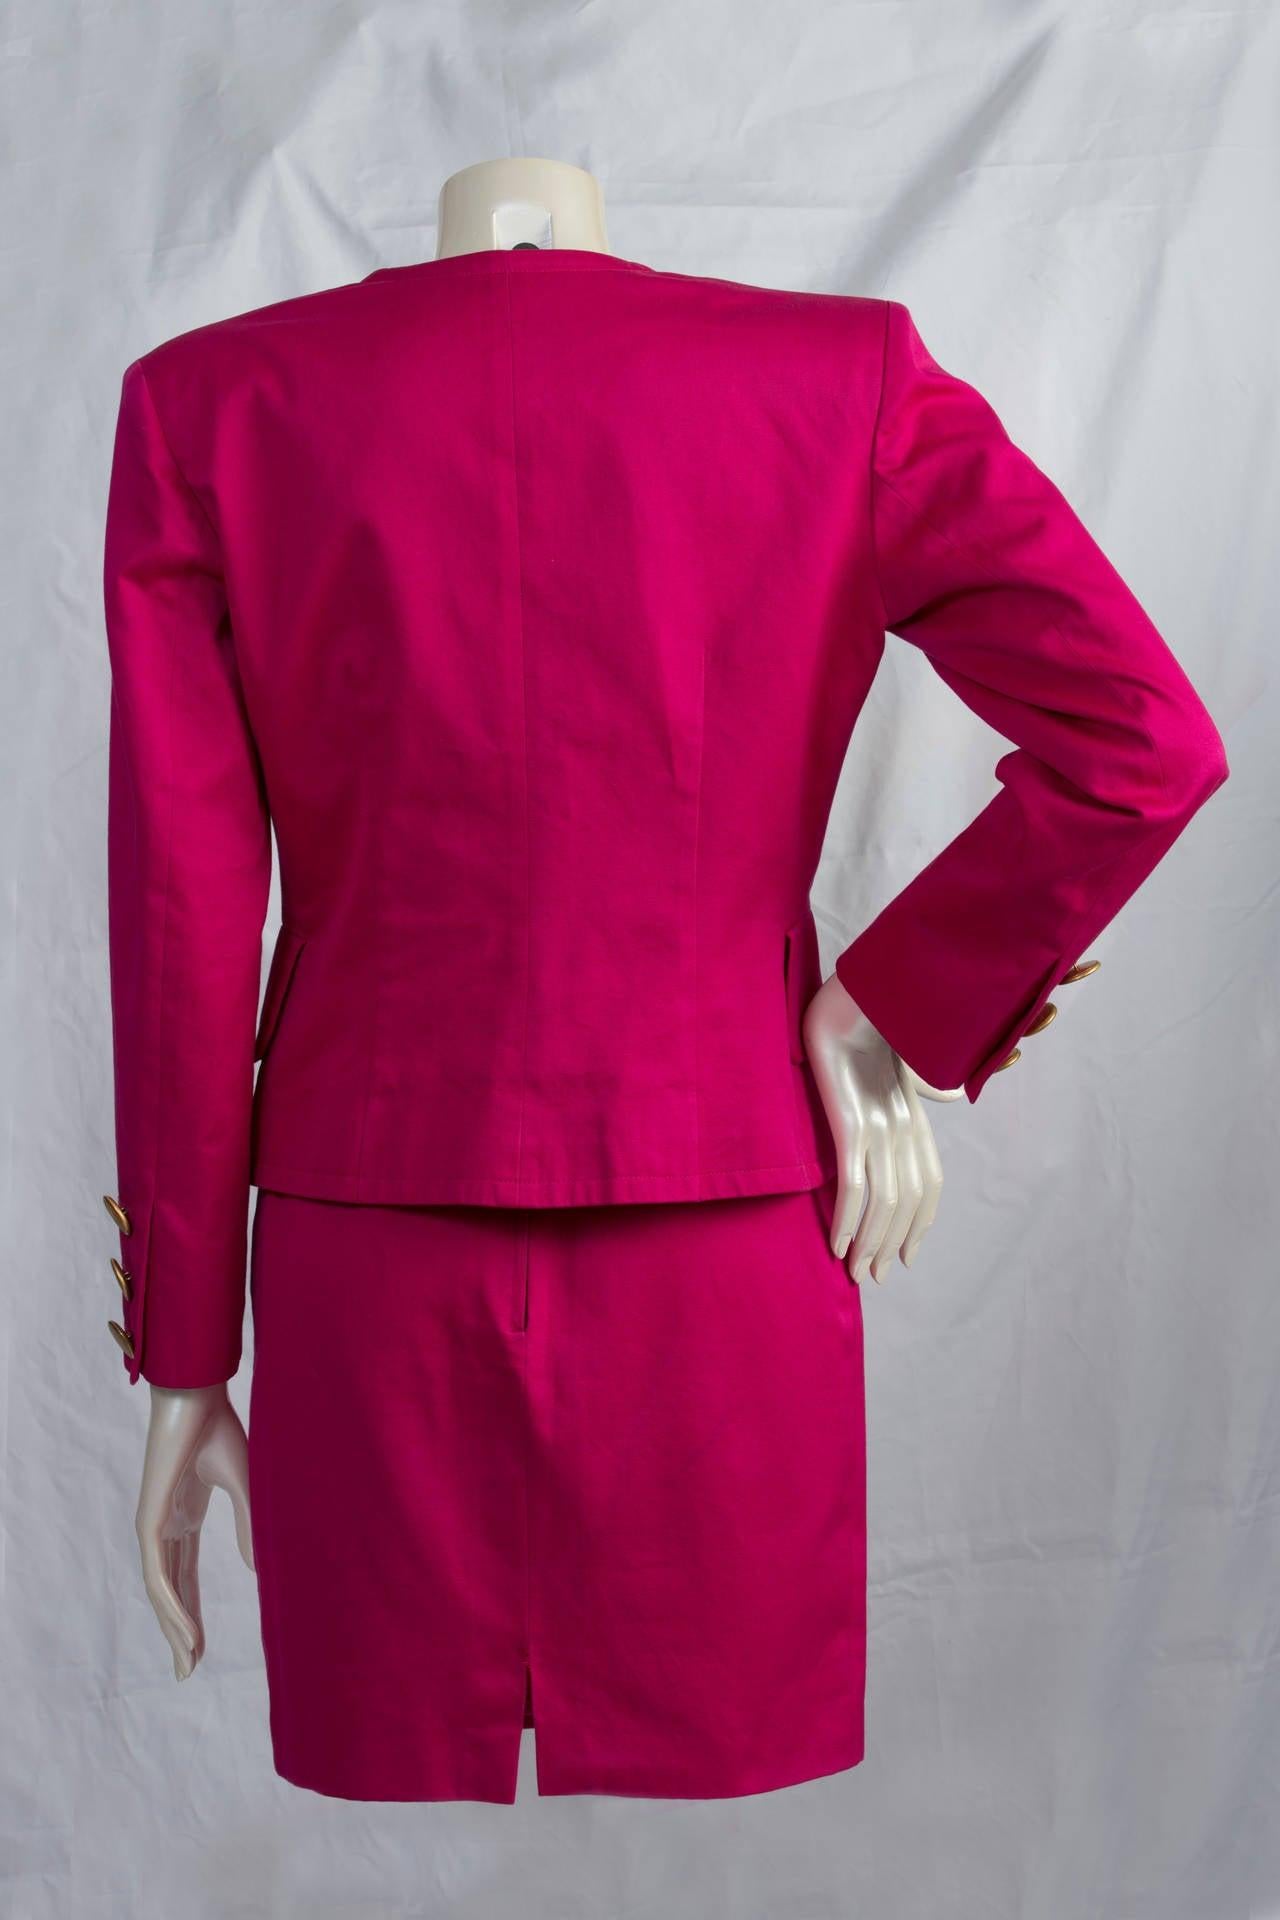 Women's 1980s Yves Saint Laurent variation fucsia suit